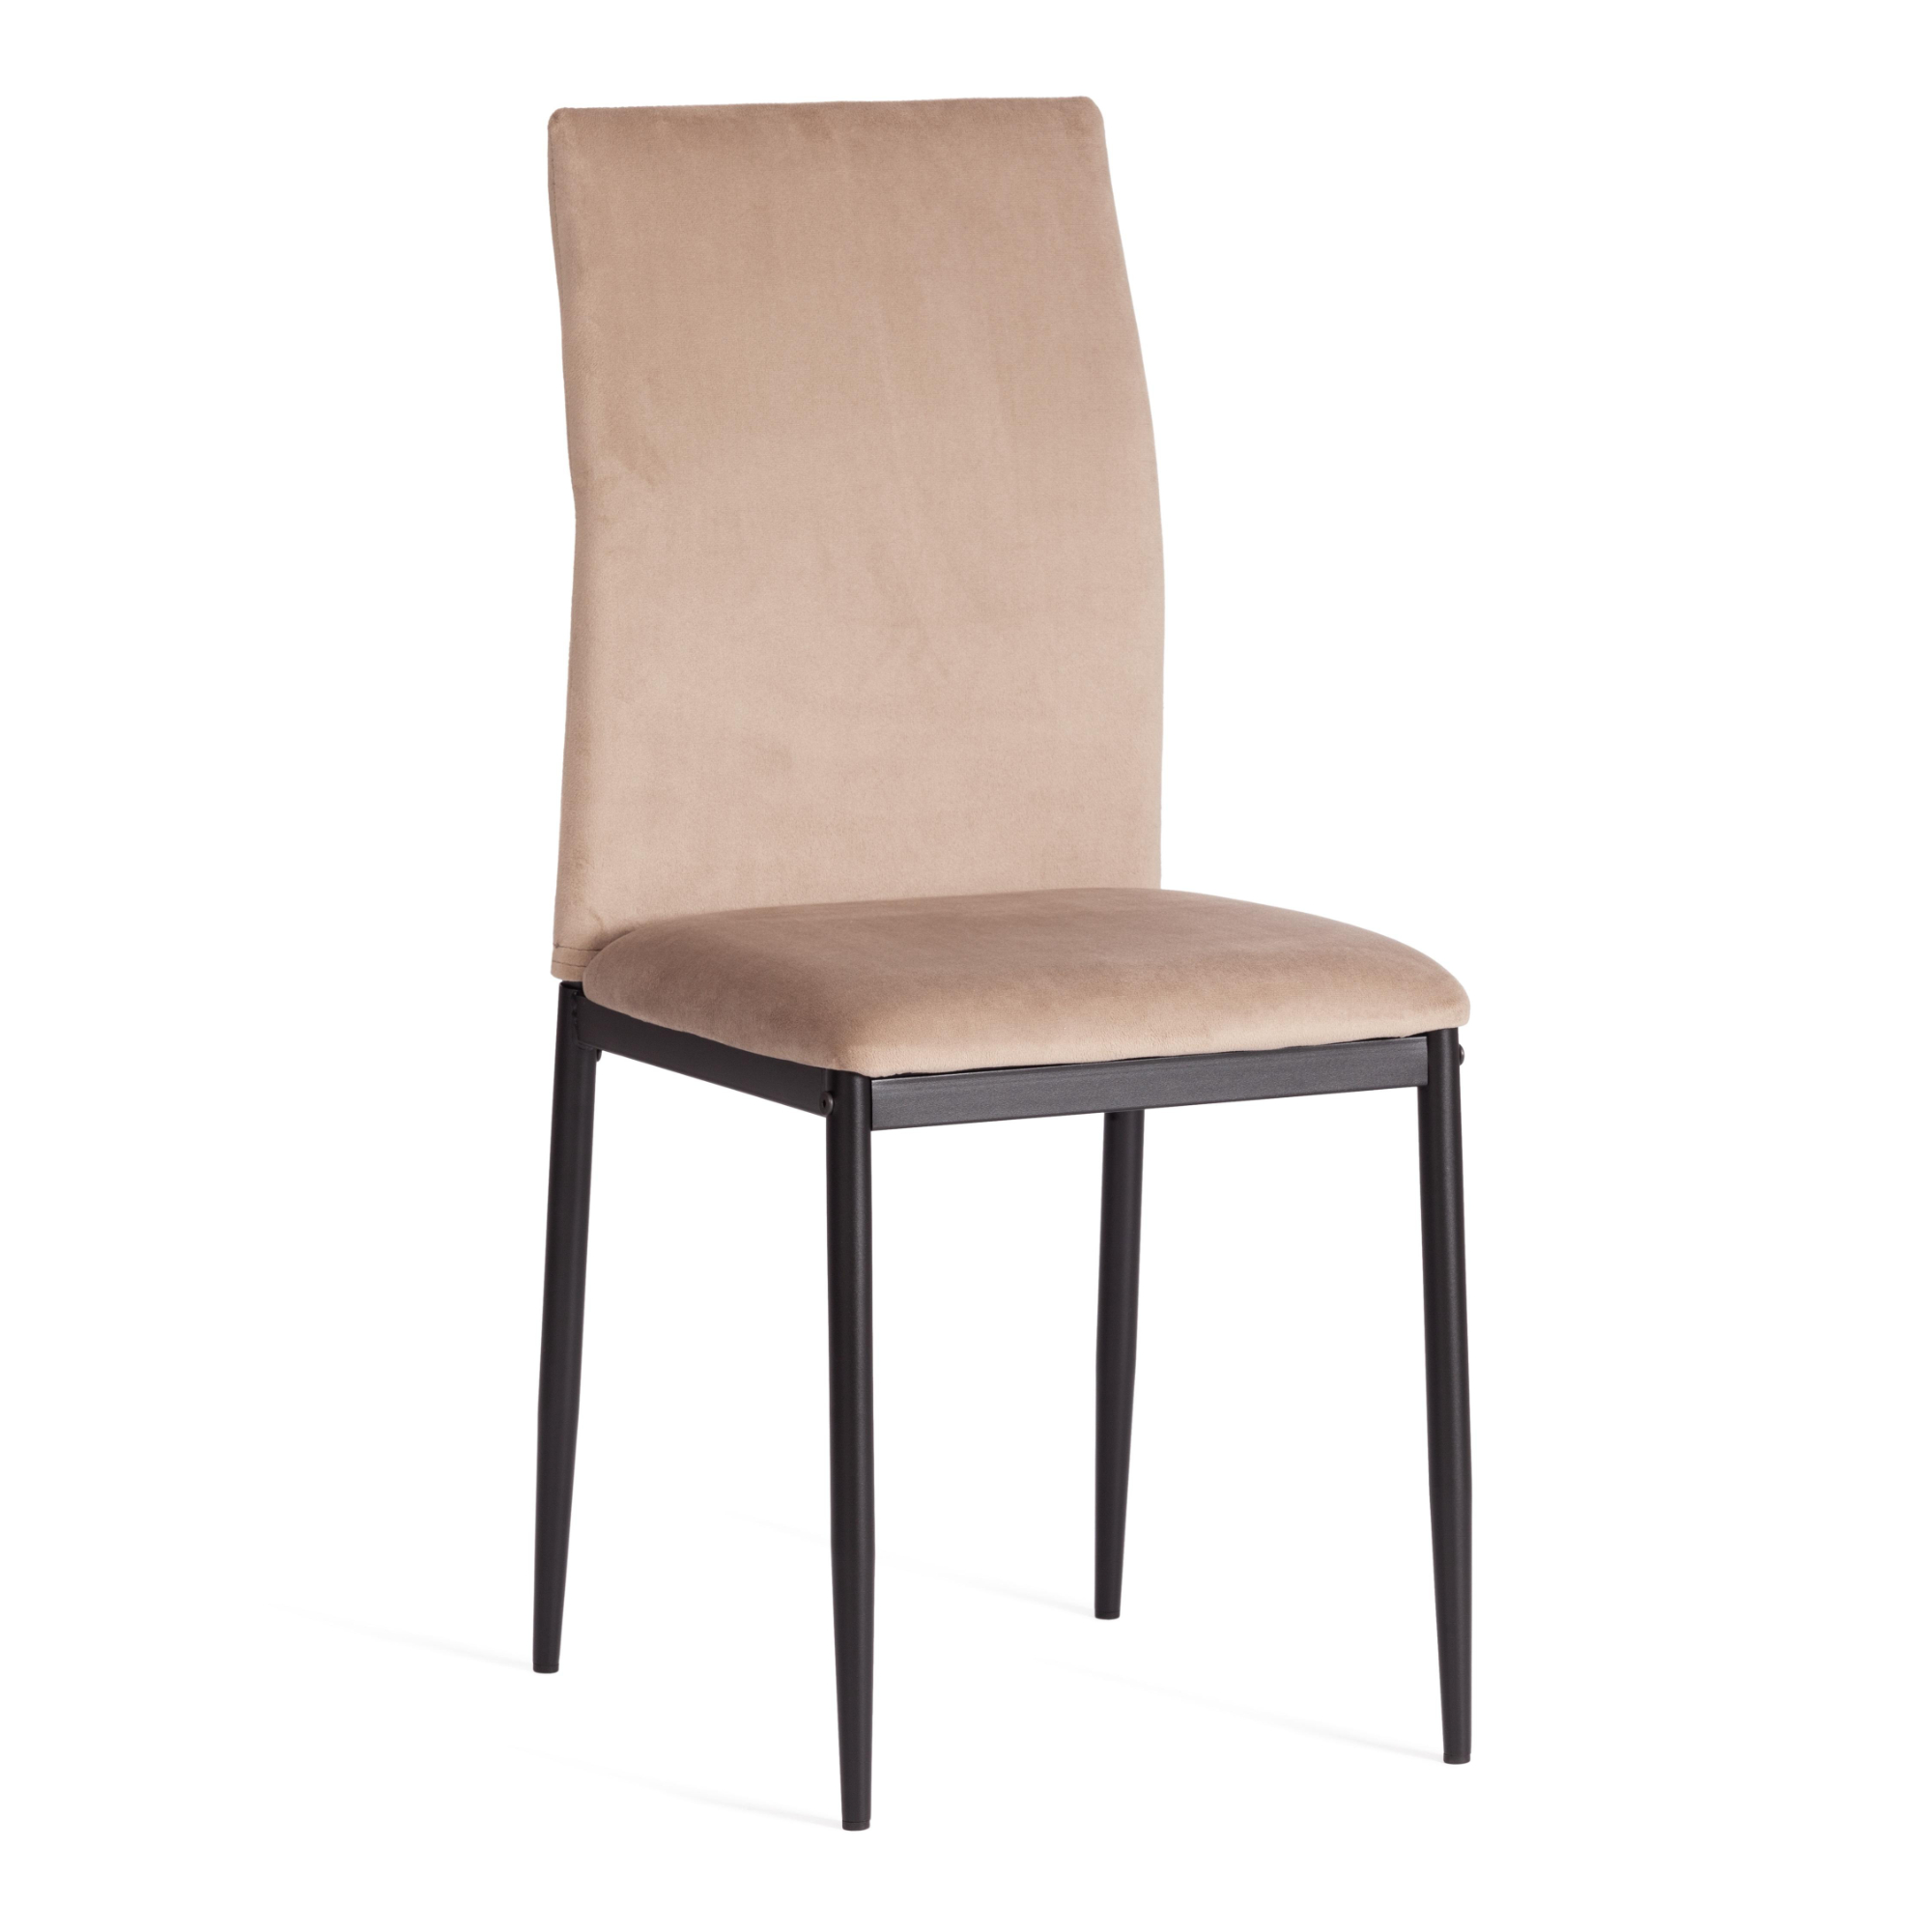 стул пластиковый усиленный стекловолокном для дома и спальни кабинета гостиной комбинированный стол и стул маленький низкий стул для ры Стул ТС Capri бежевый вельвет 49,5х41х93,5 см